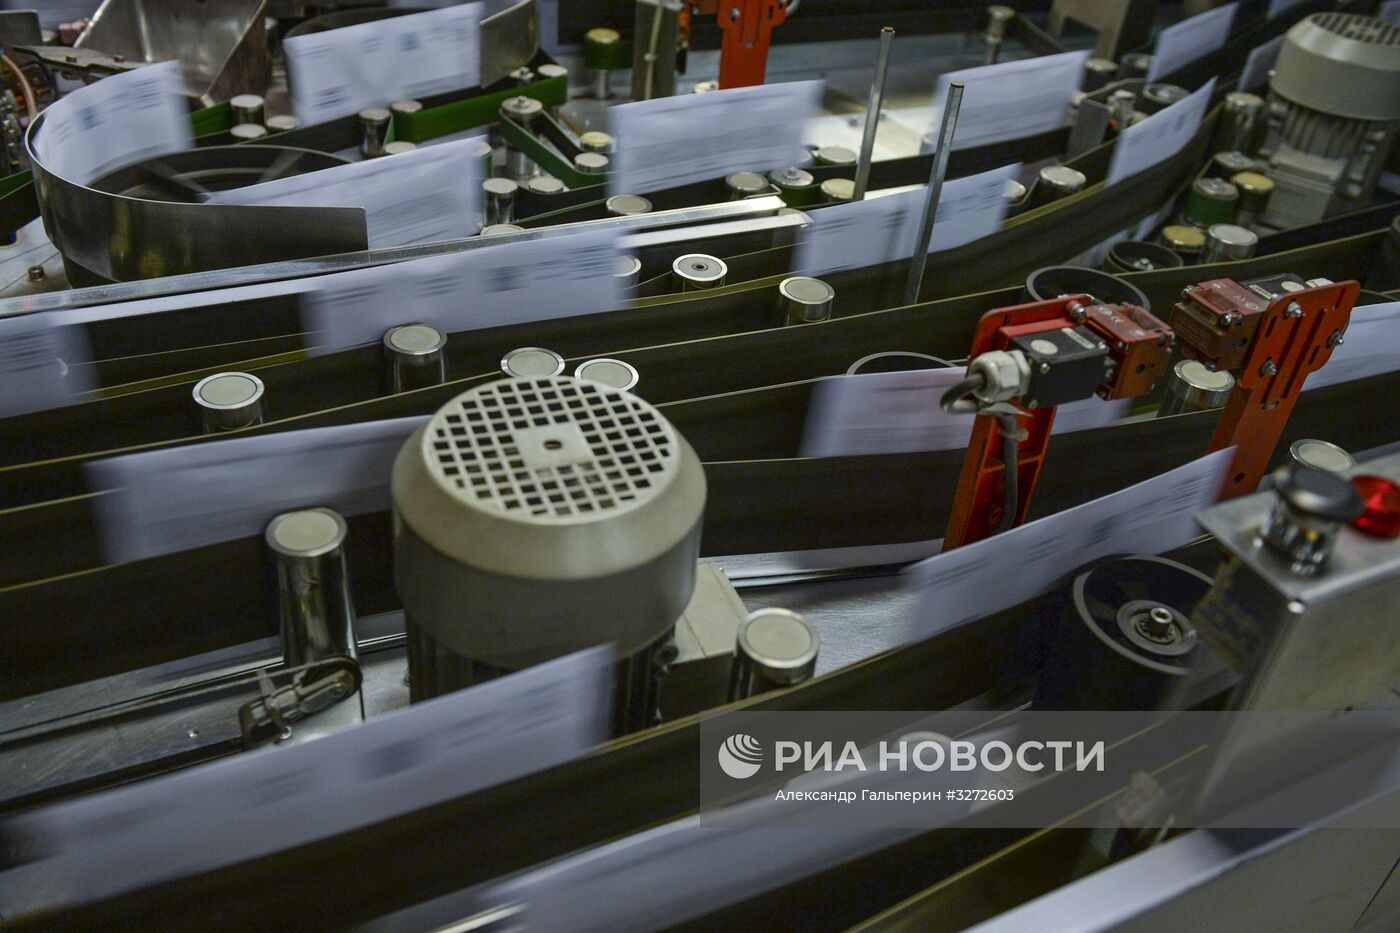 Запуск новой сортировочной линии "Почты России" в Санкт-Петербурге